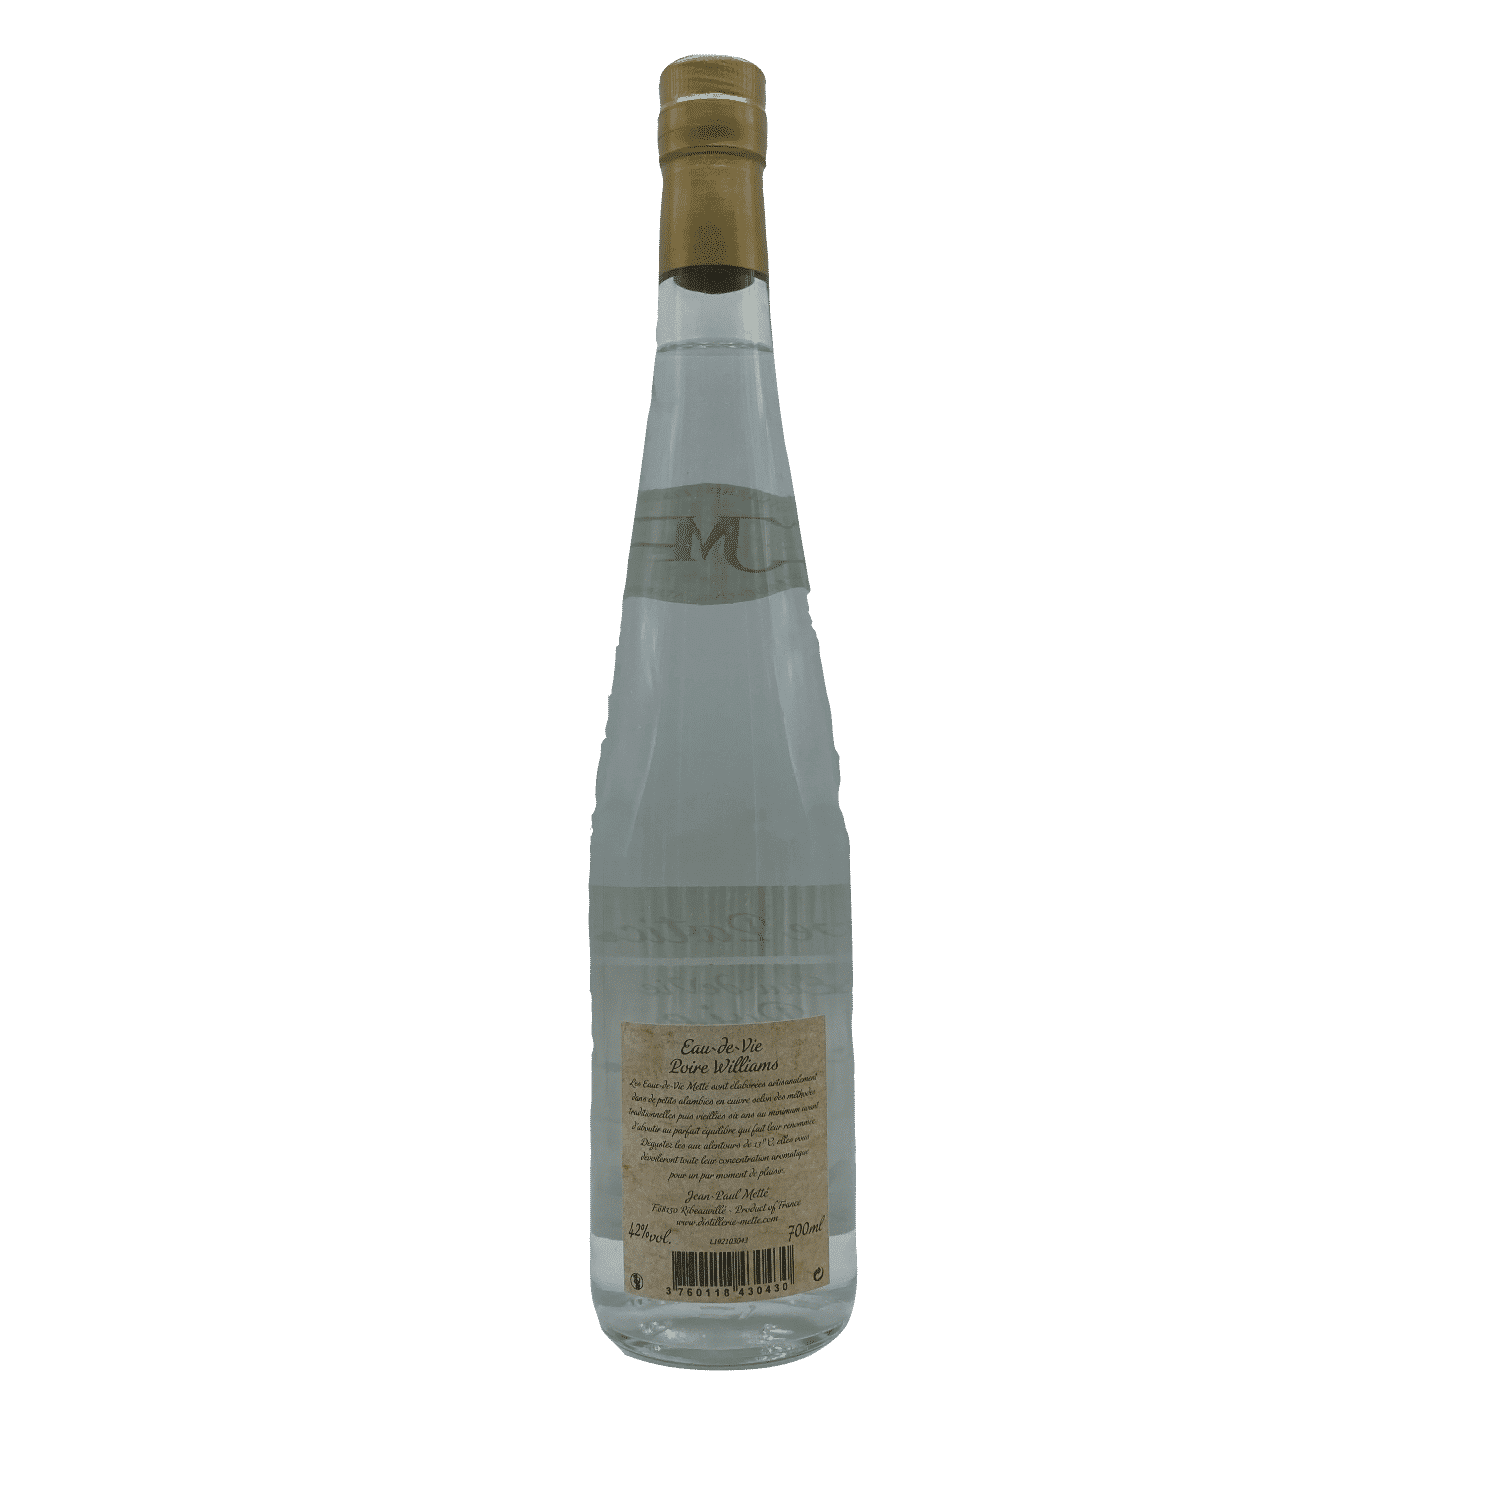 Liqueurs d'Alsace Liqueur de poire williams - Distillerie Metté